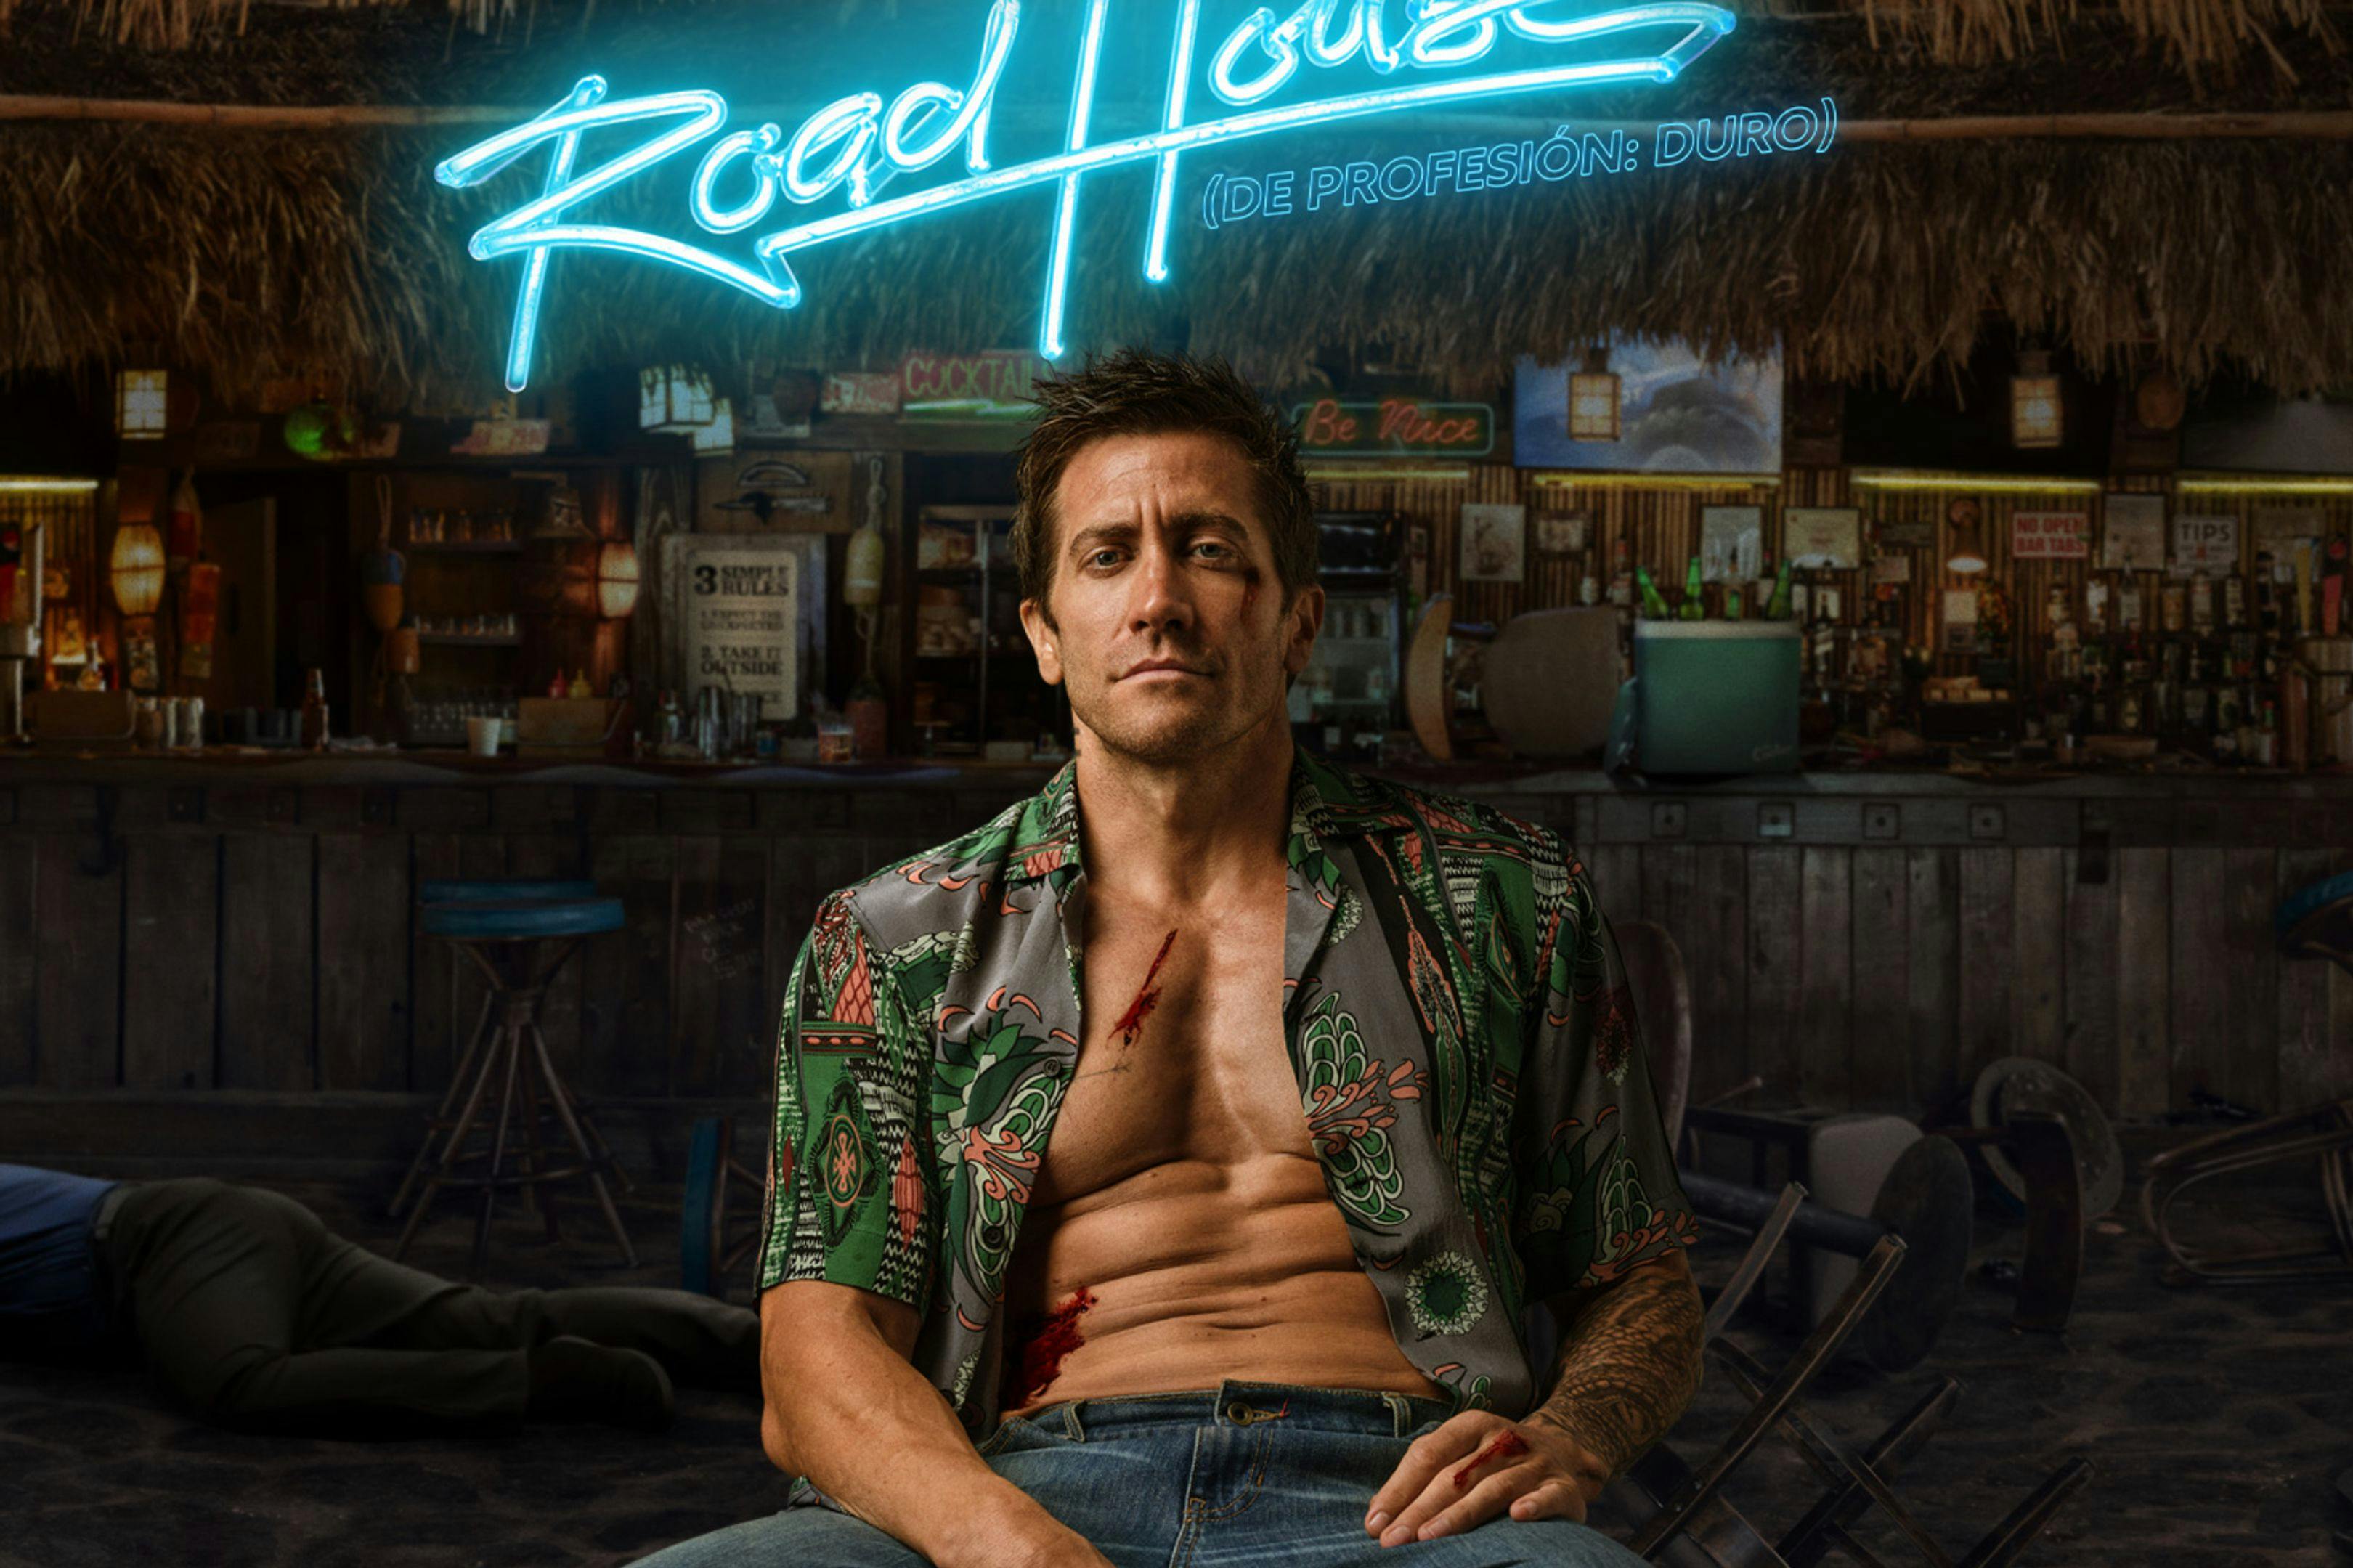 Imagen del cartel promocional de ‘De profesión: duro', protagonizada por Jake Gyllenhaal